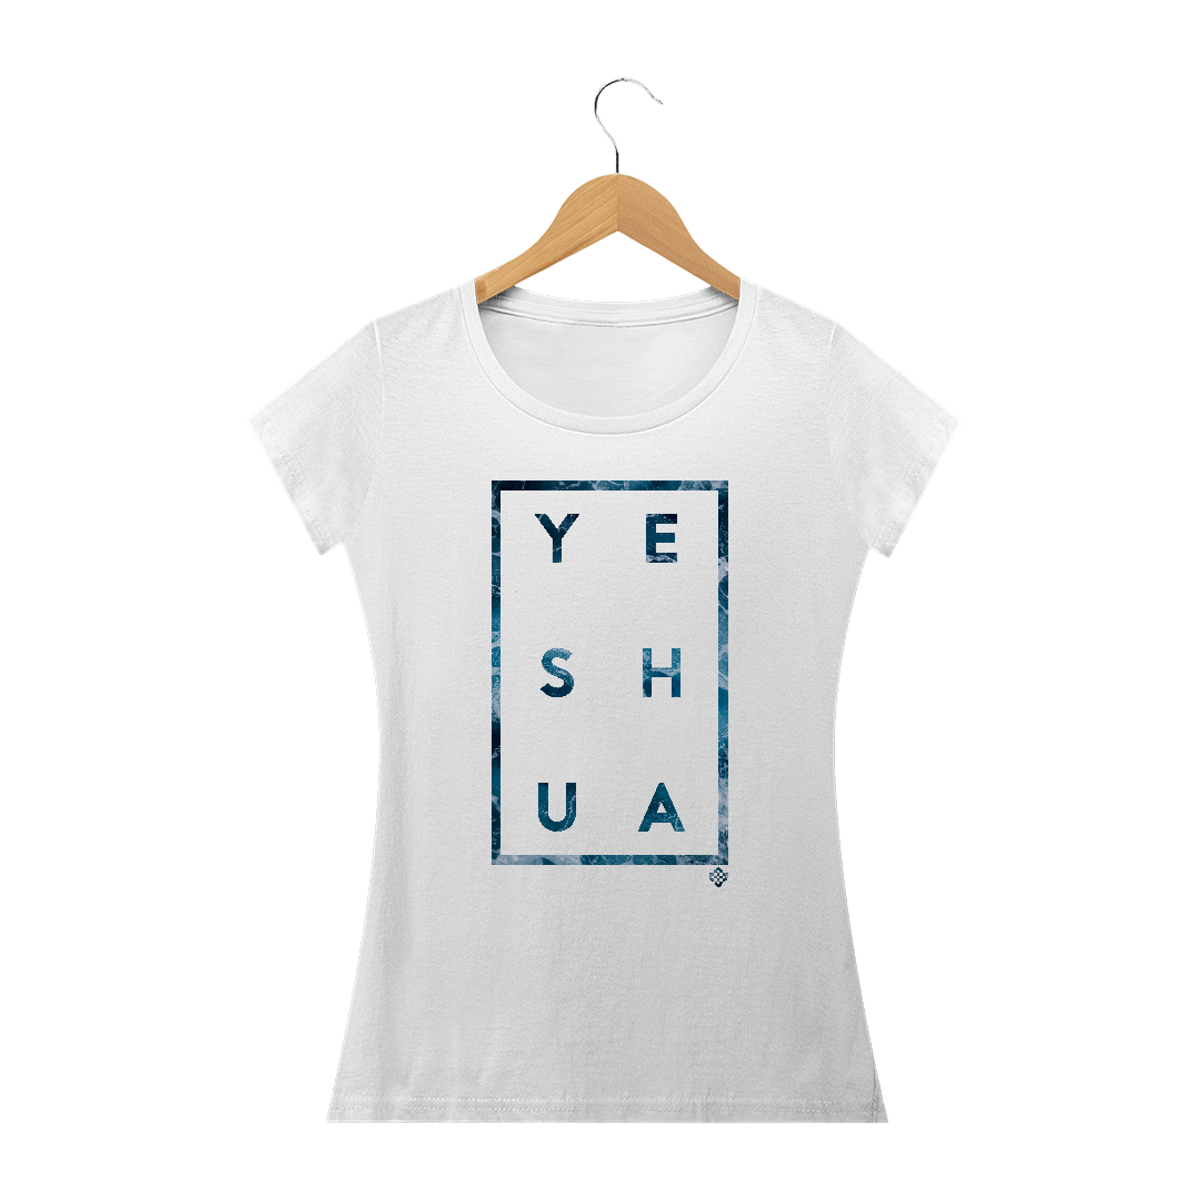 Nome do produto: Camiseta Feminina Yeshua